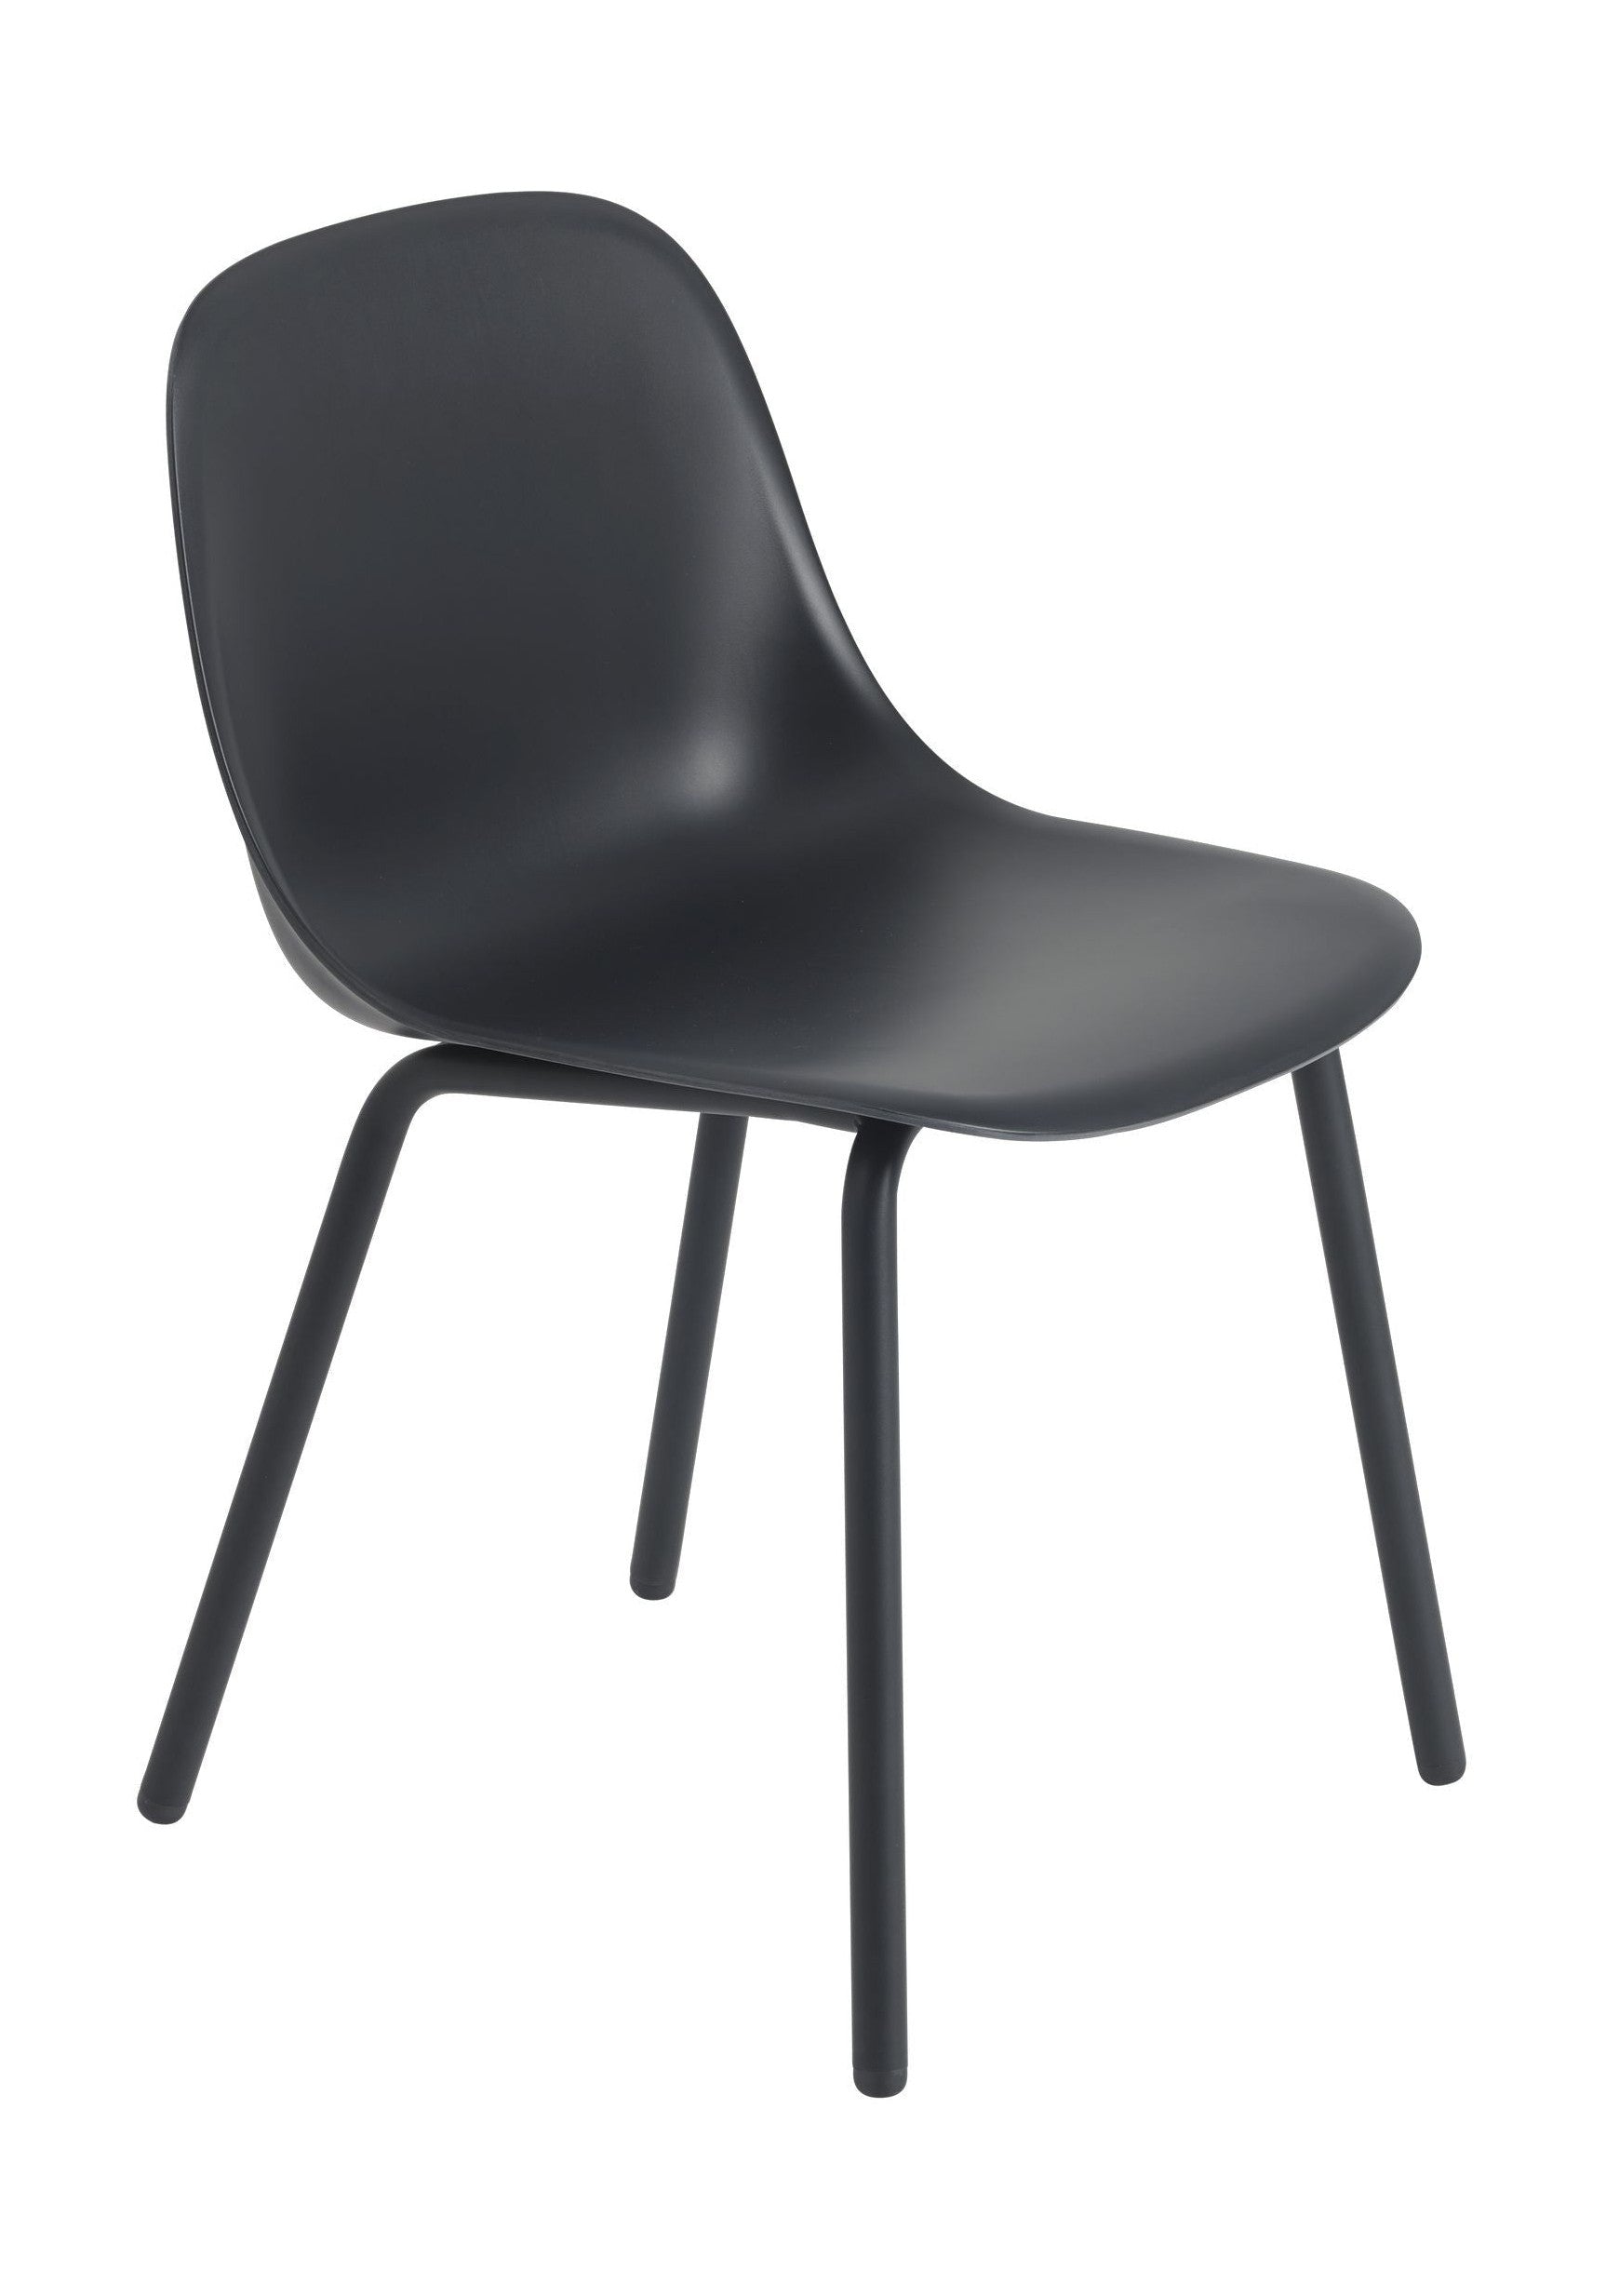 Venkovní boční židle Muuto, Antracite Black